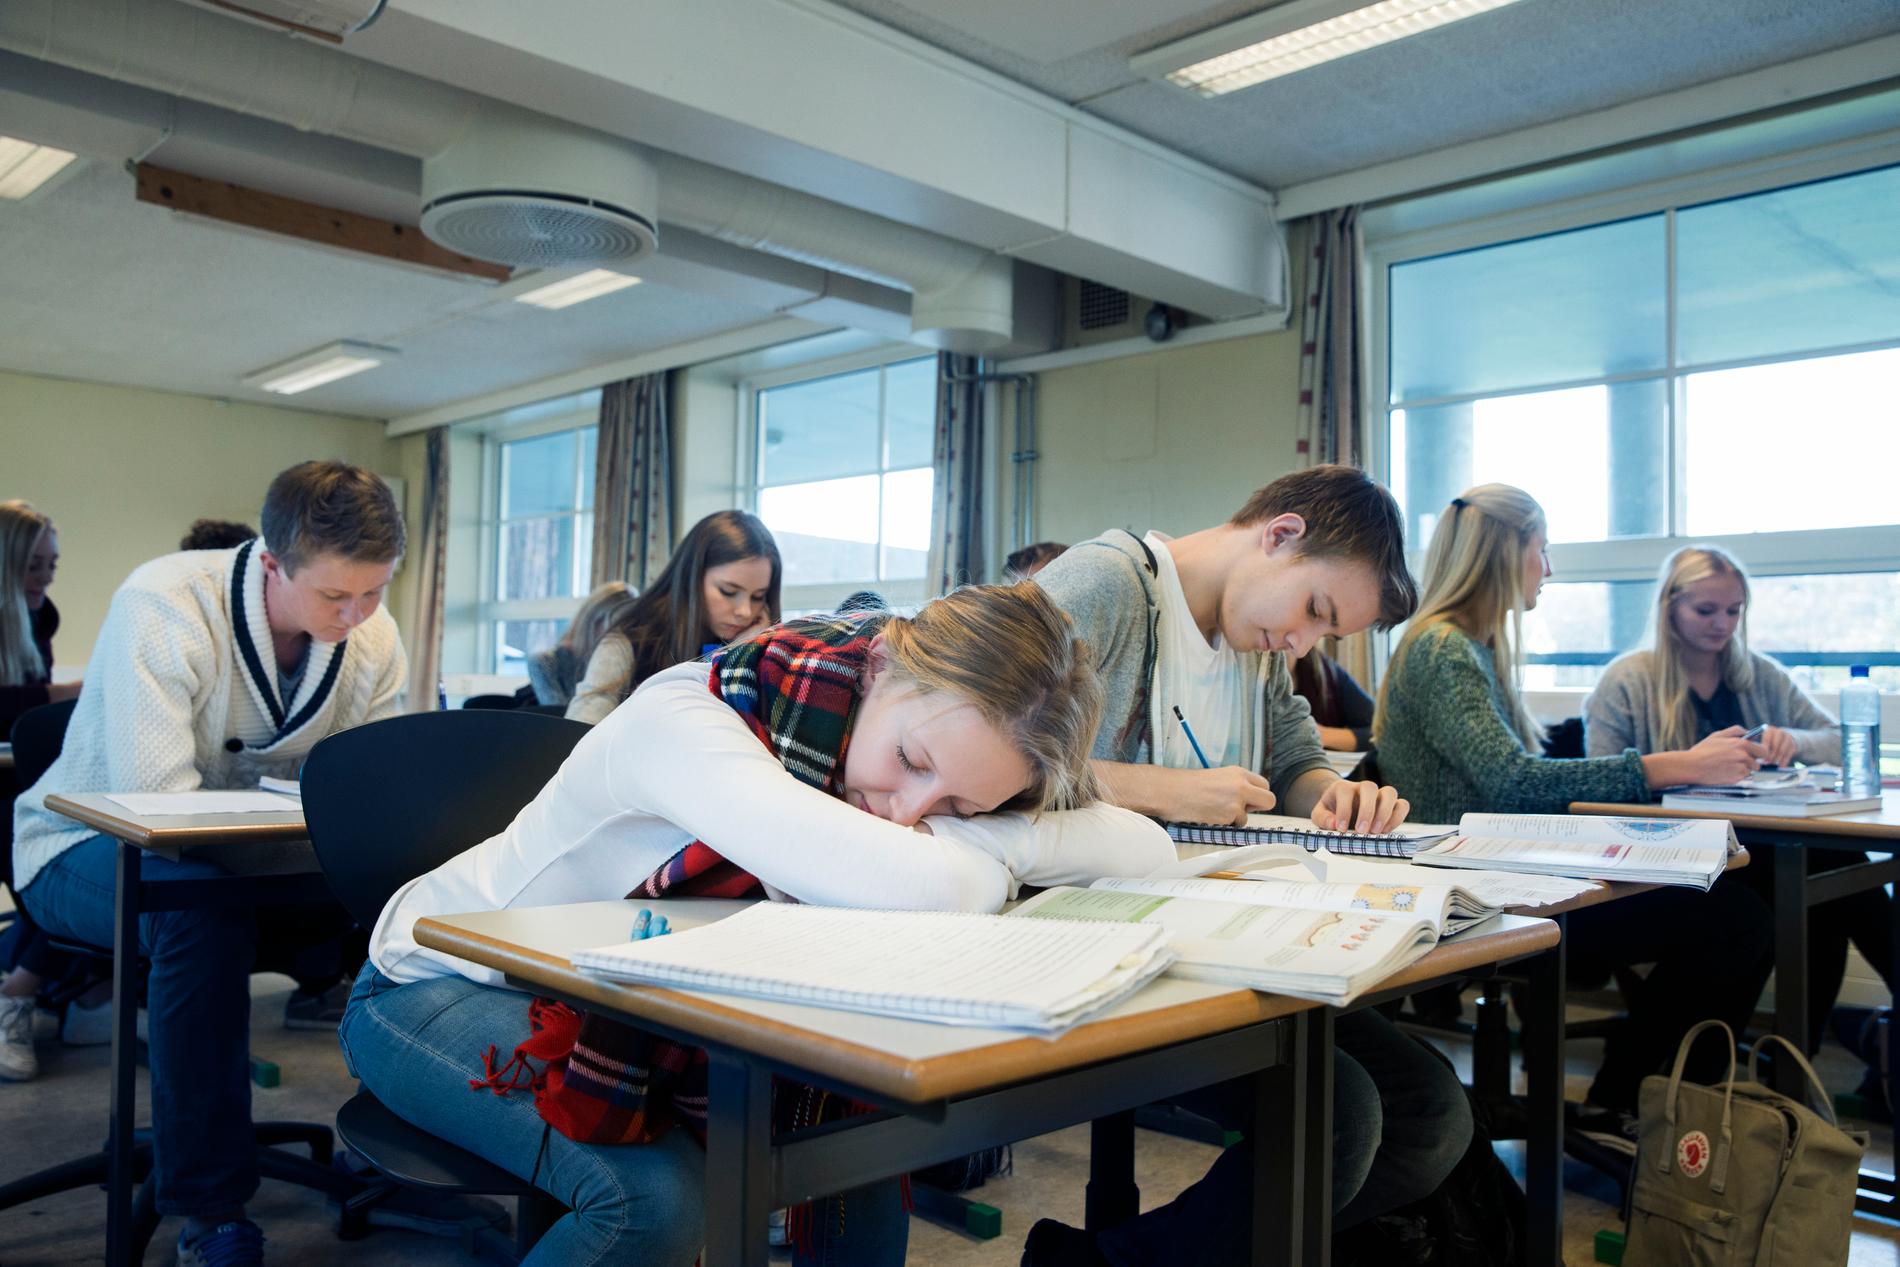 Vad händer egentligen i svenska klassrum? Utbildningsministern vill ha svar. Arkivbild.